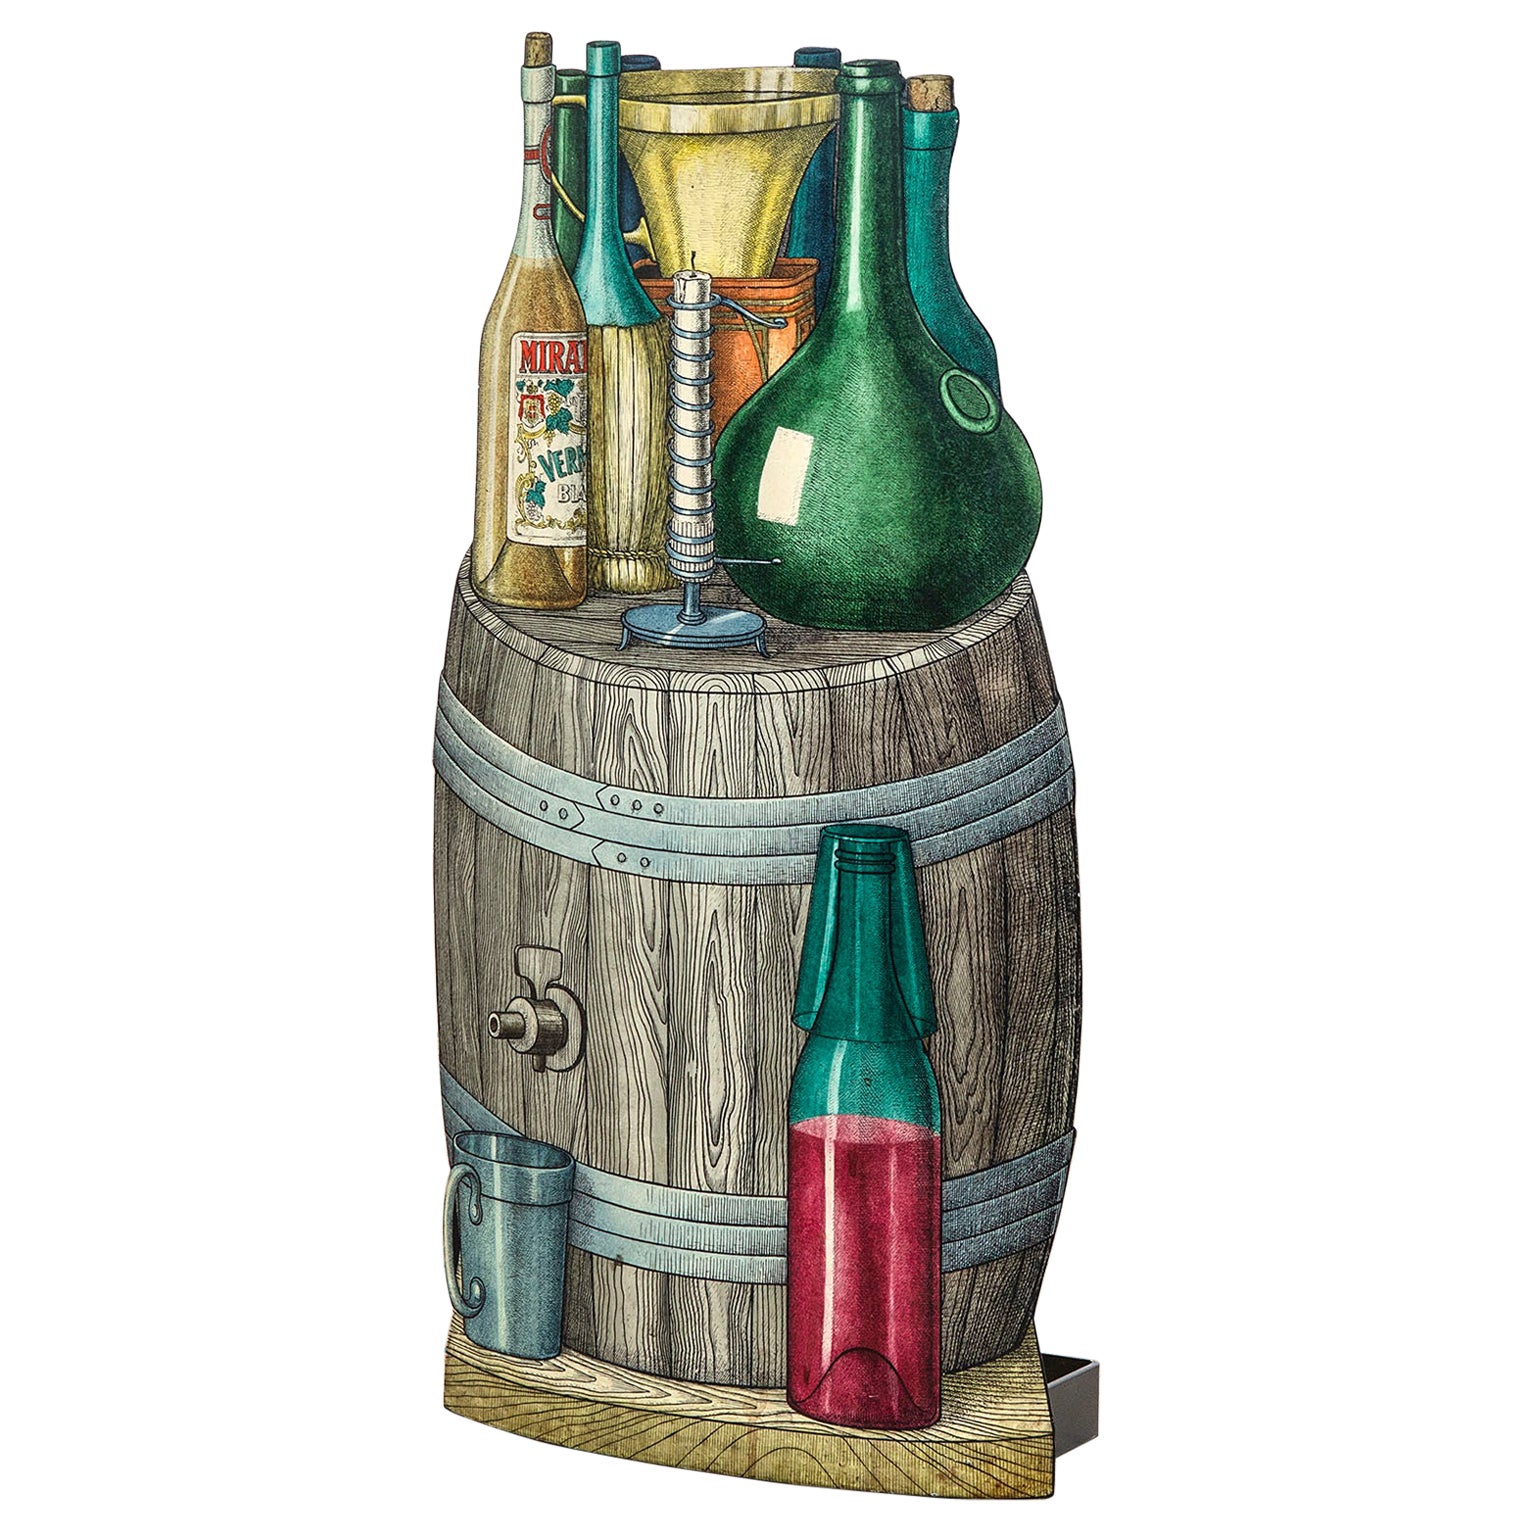 Porte-parapluies Piero Fornasetti du 20ème siècle sur le thème des bouteilles de vin en métal imprimé